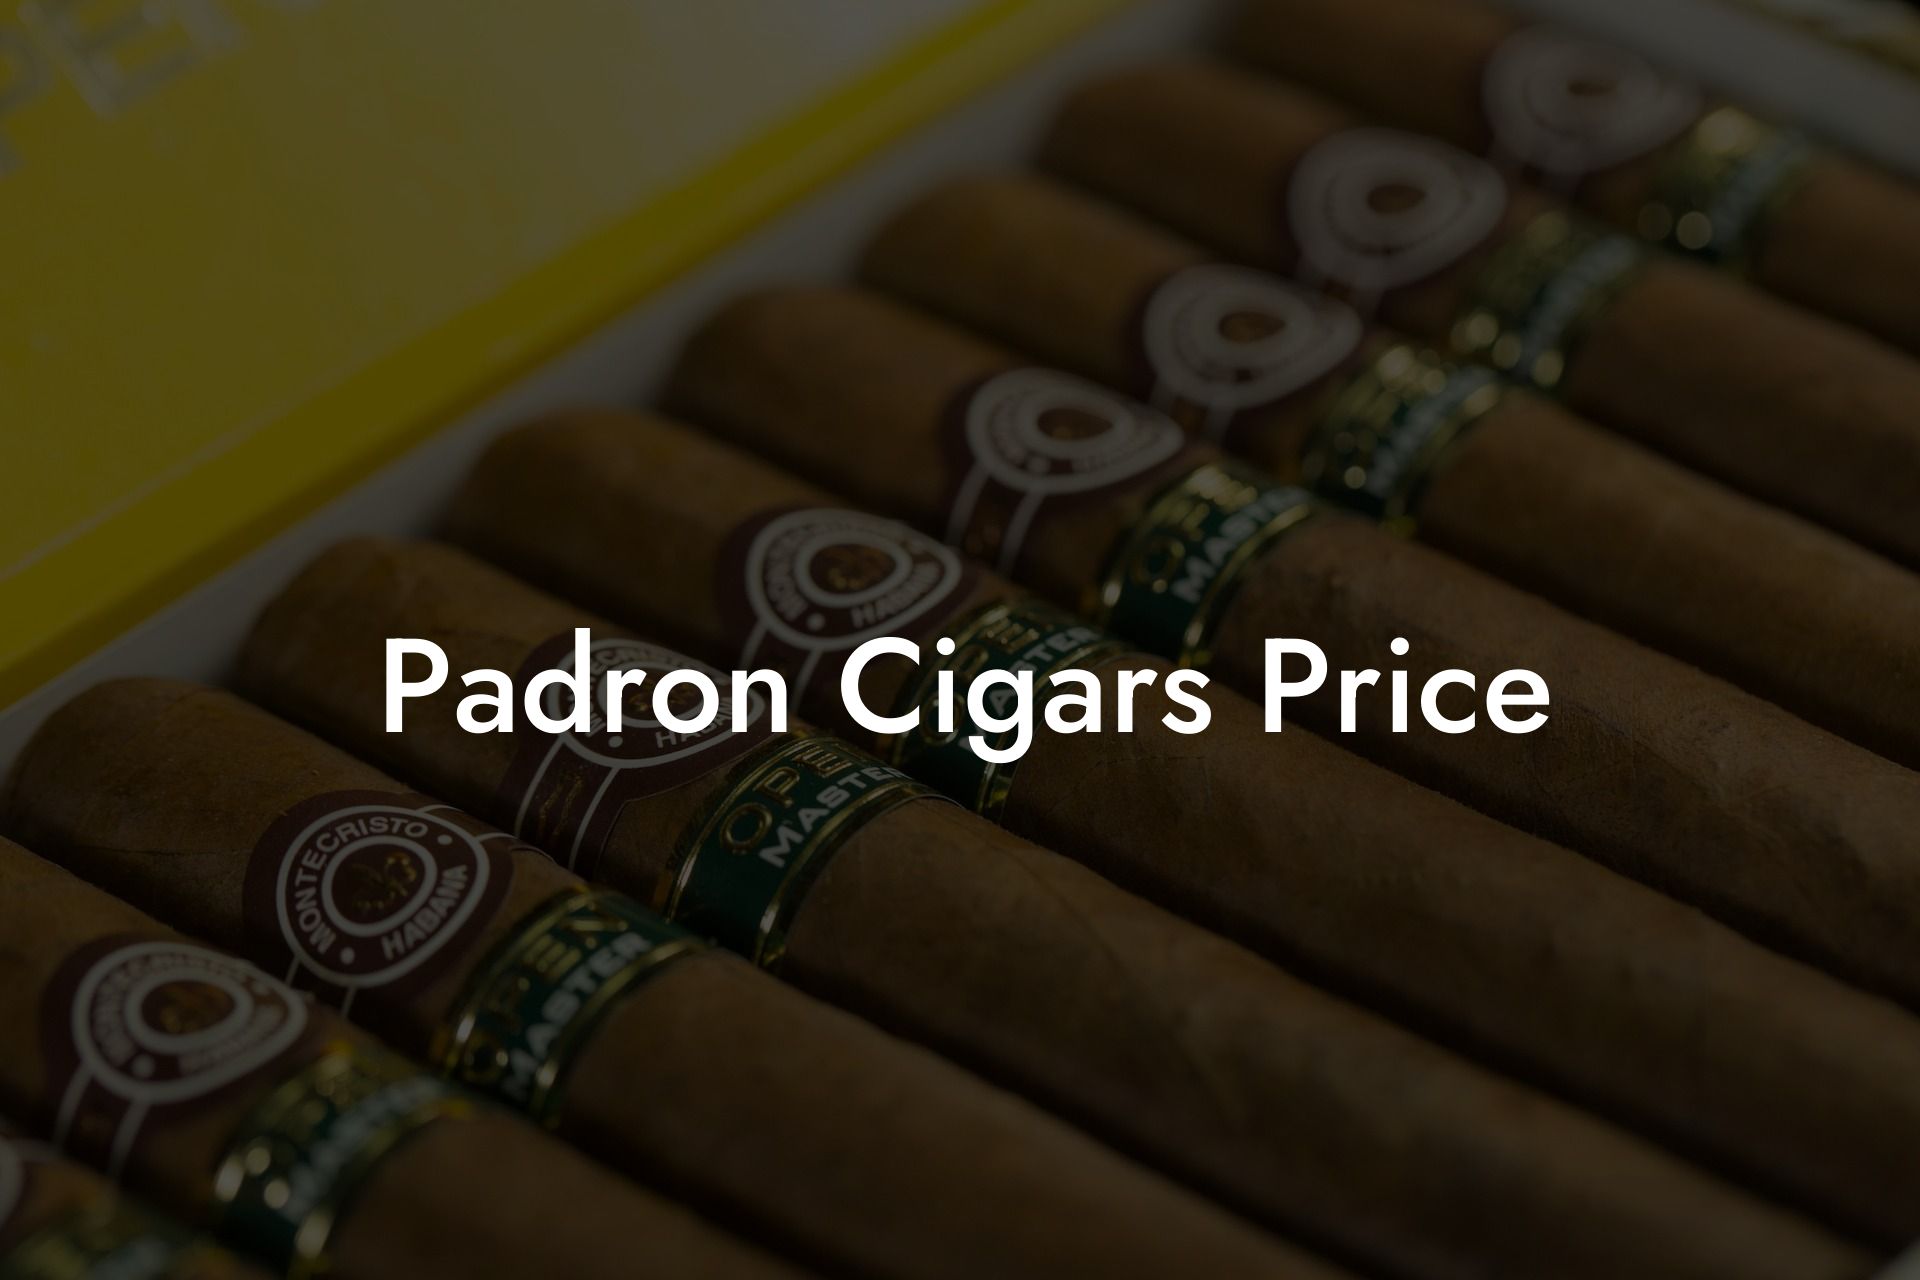 Padron Cigars Price